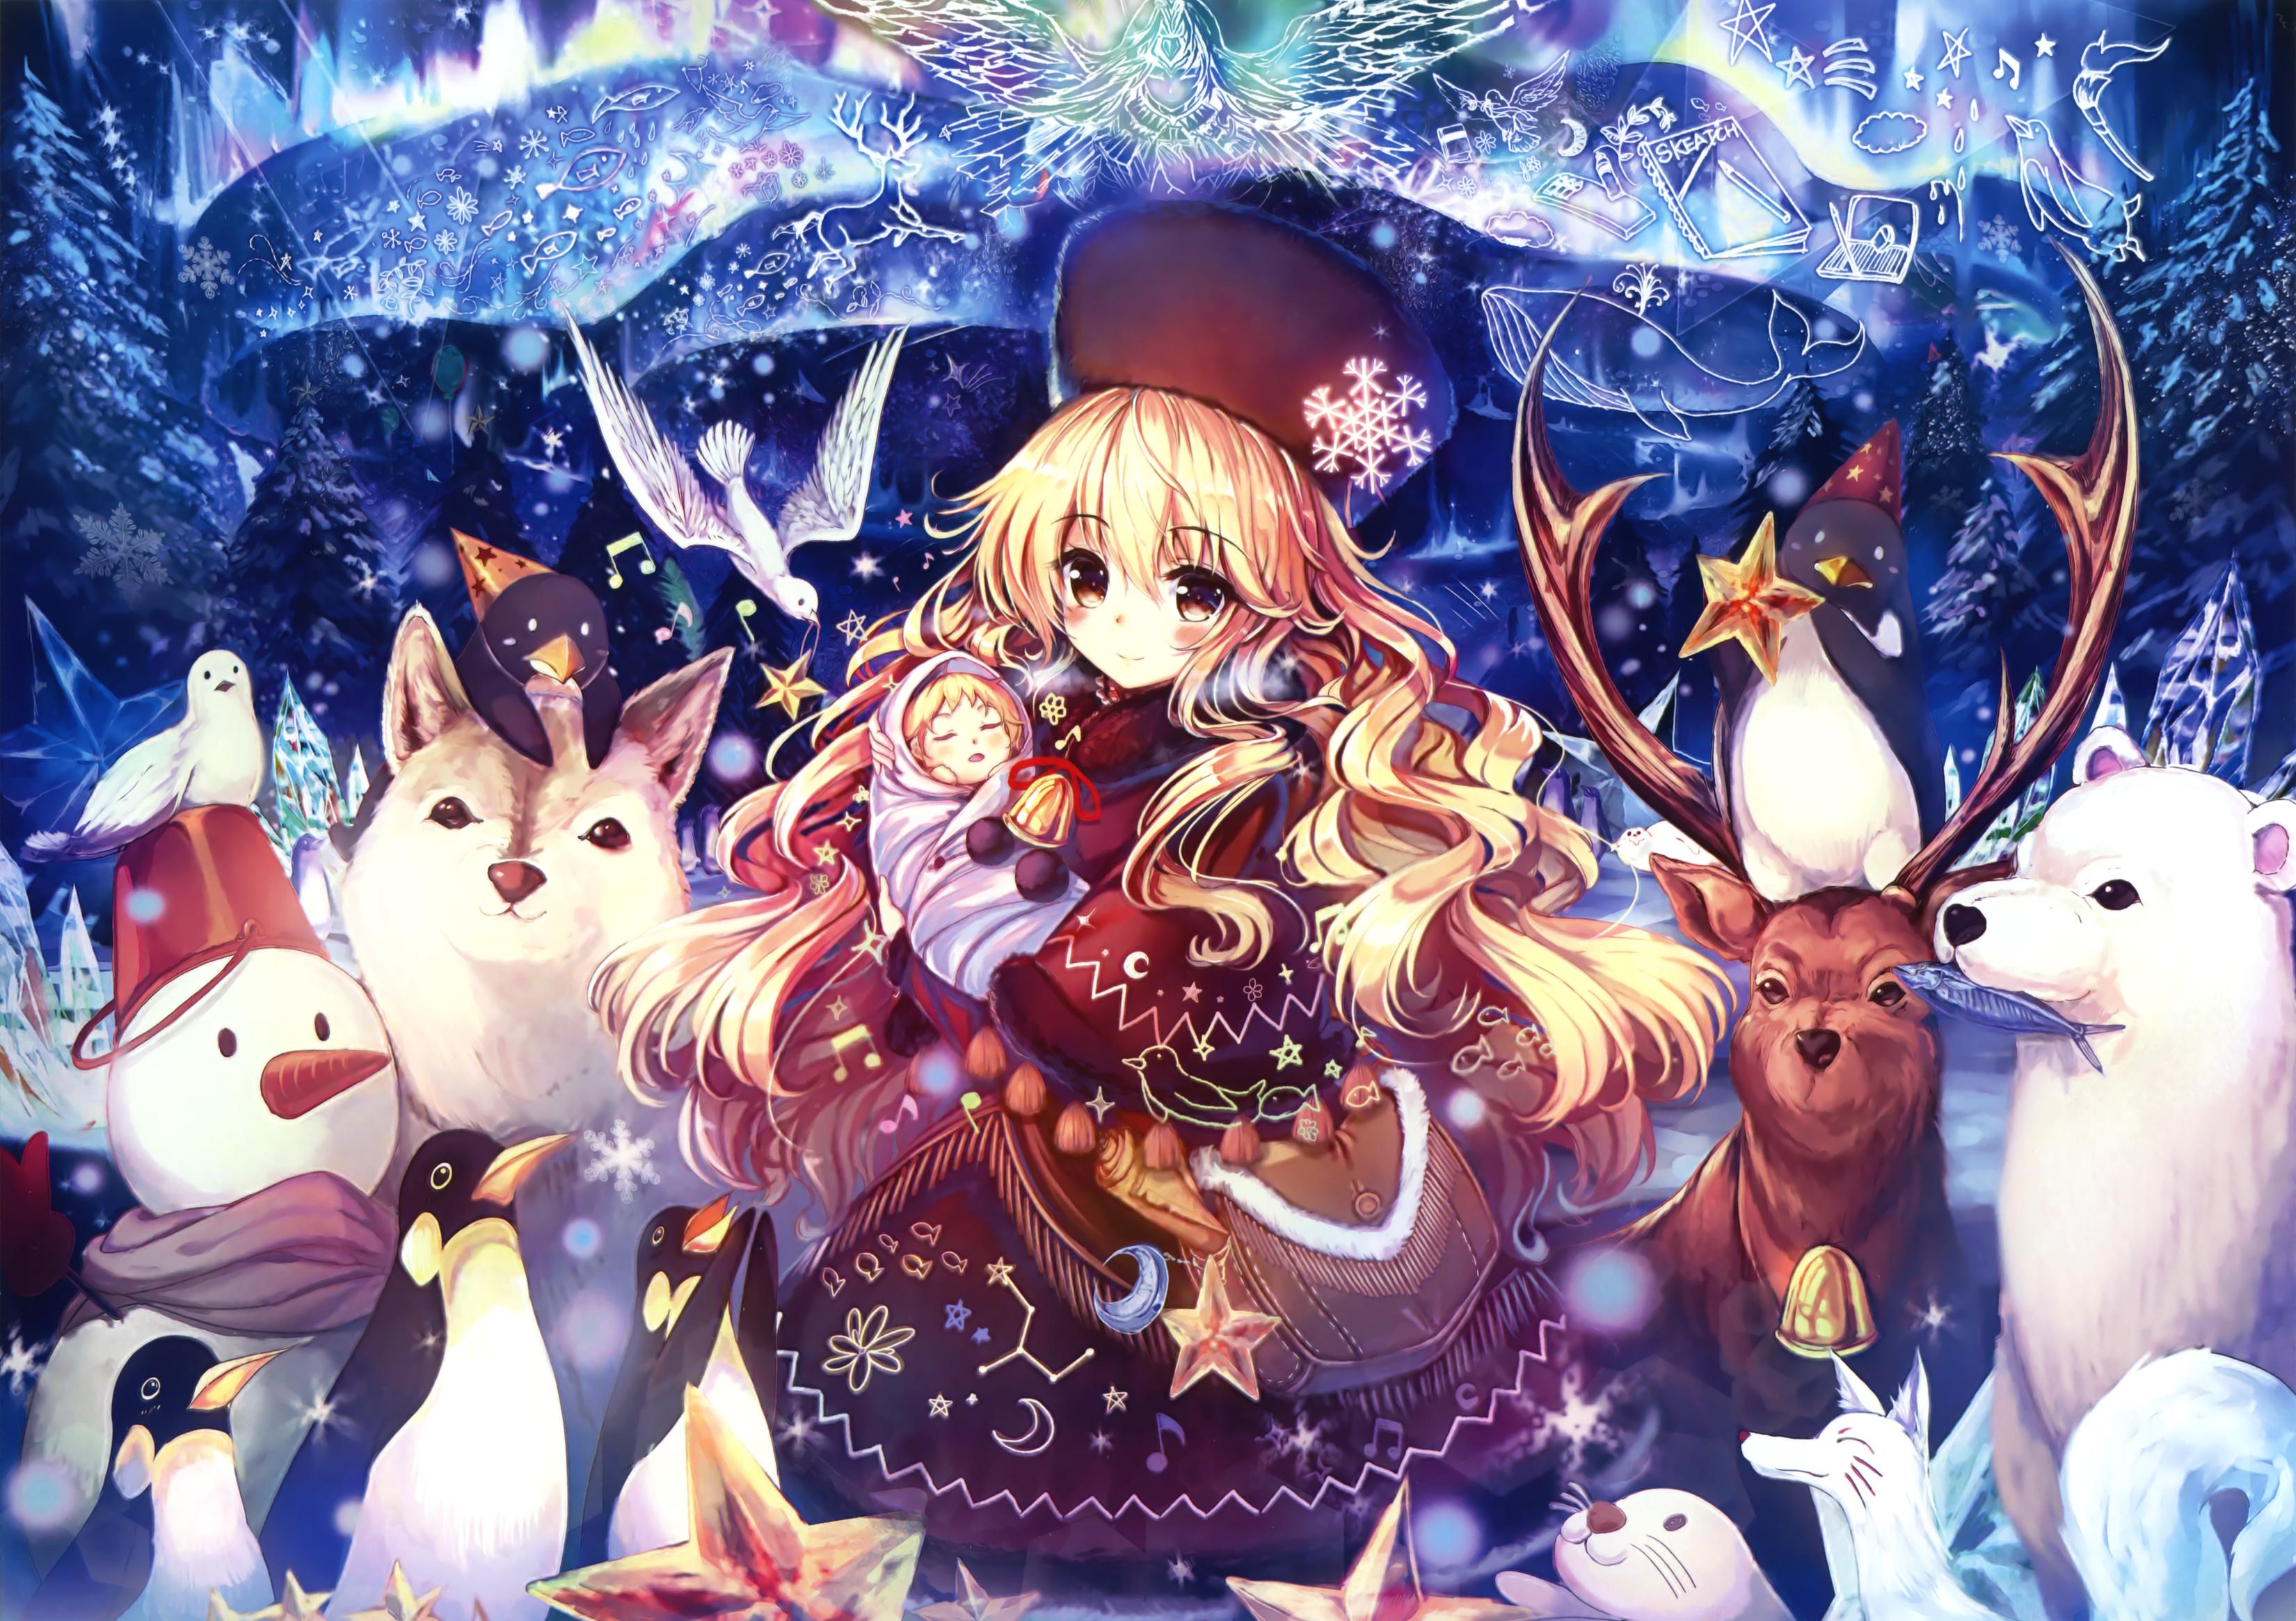 Kawaii Anime Girl & Christmas Tree Cozy Wallpapers - Wallpapers Clan